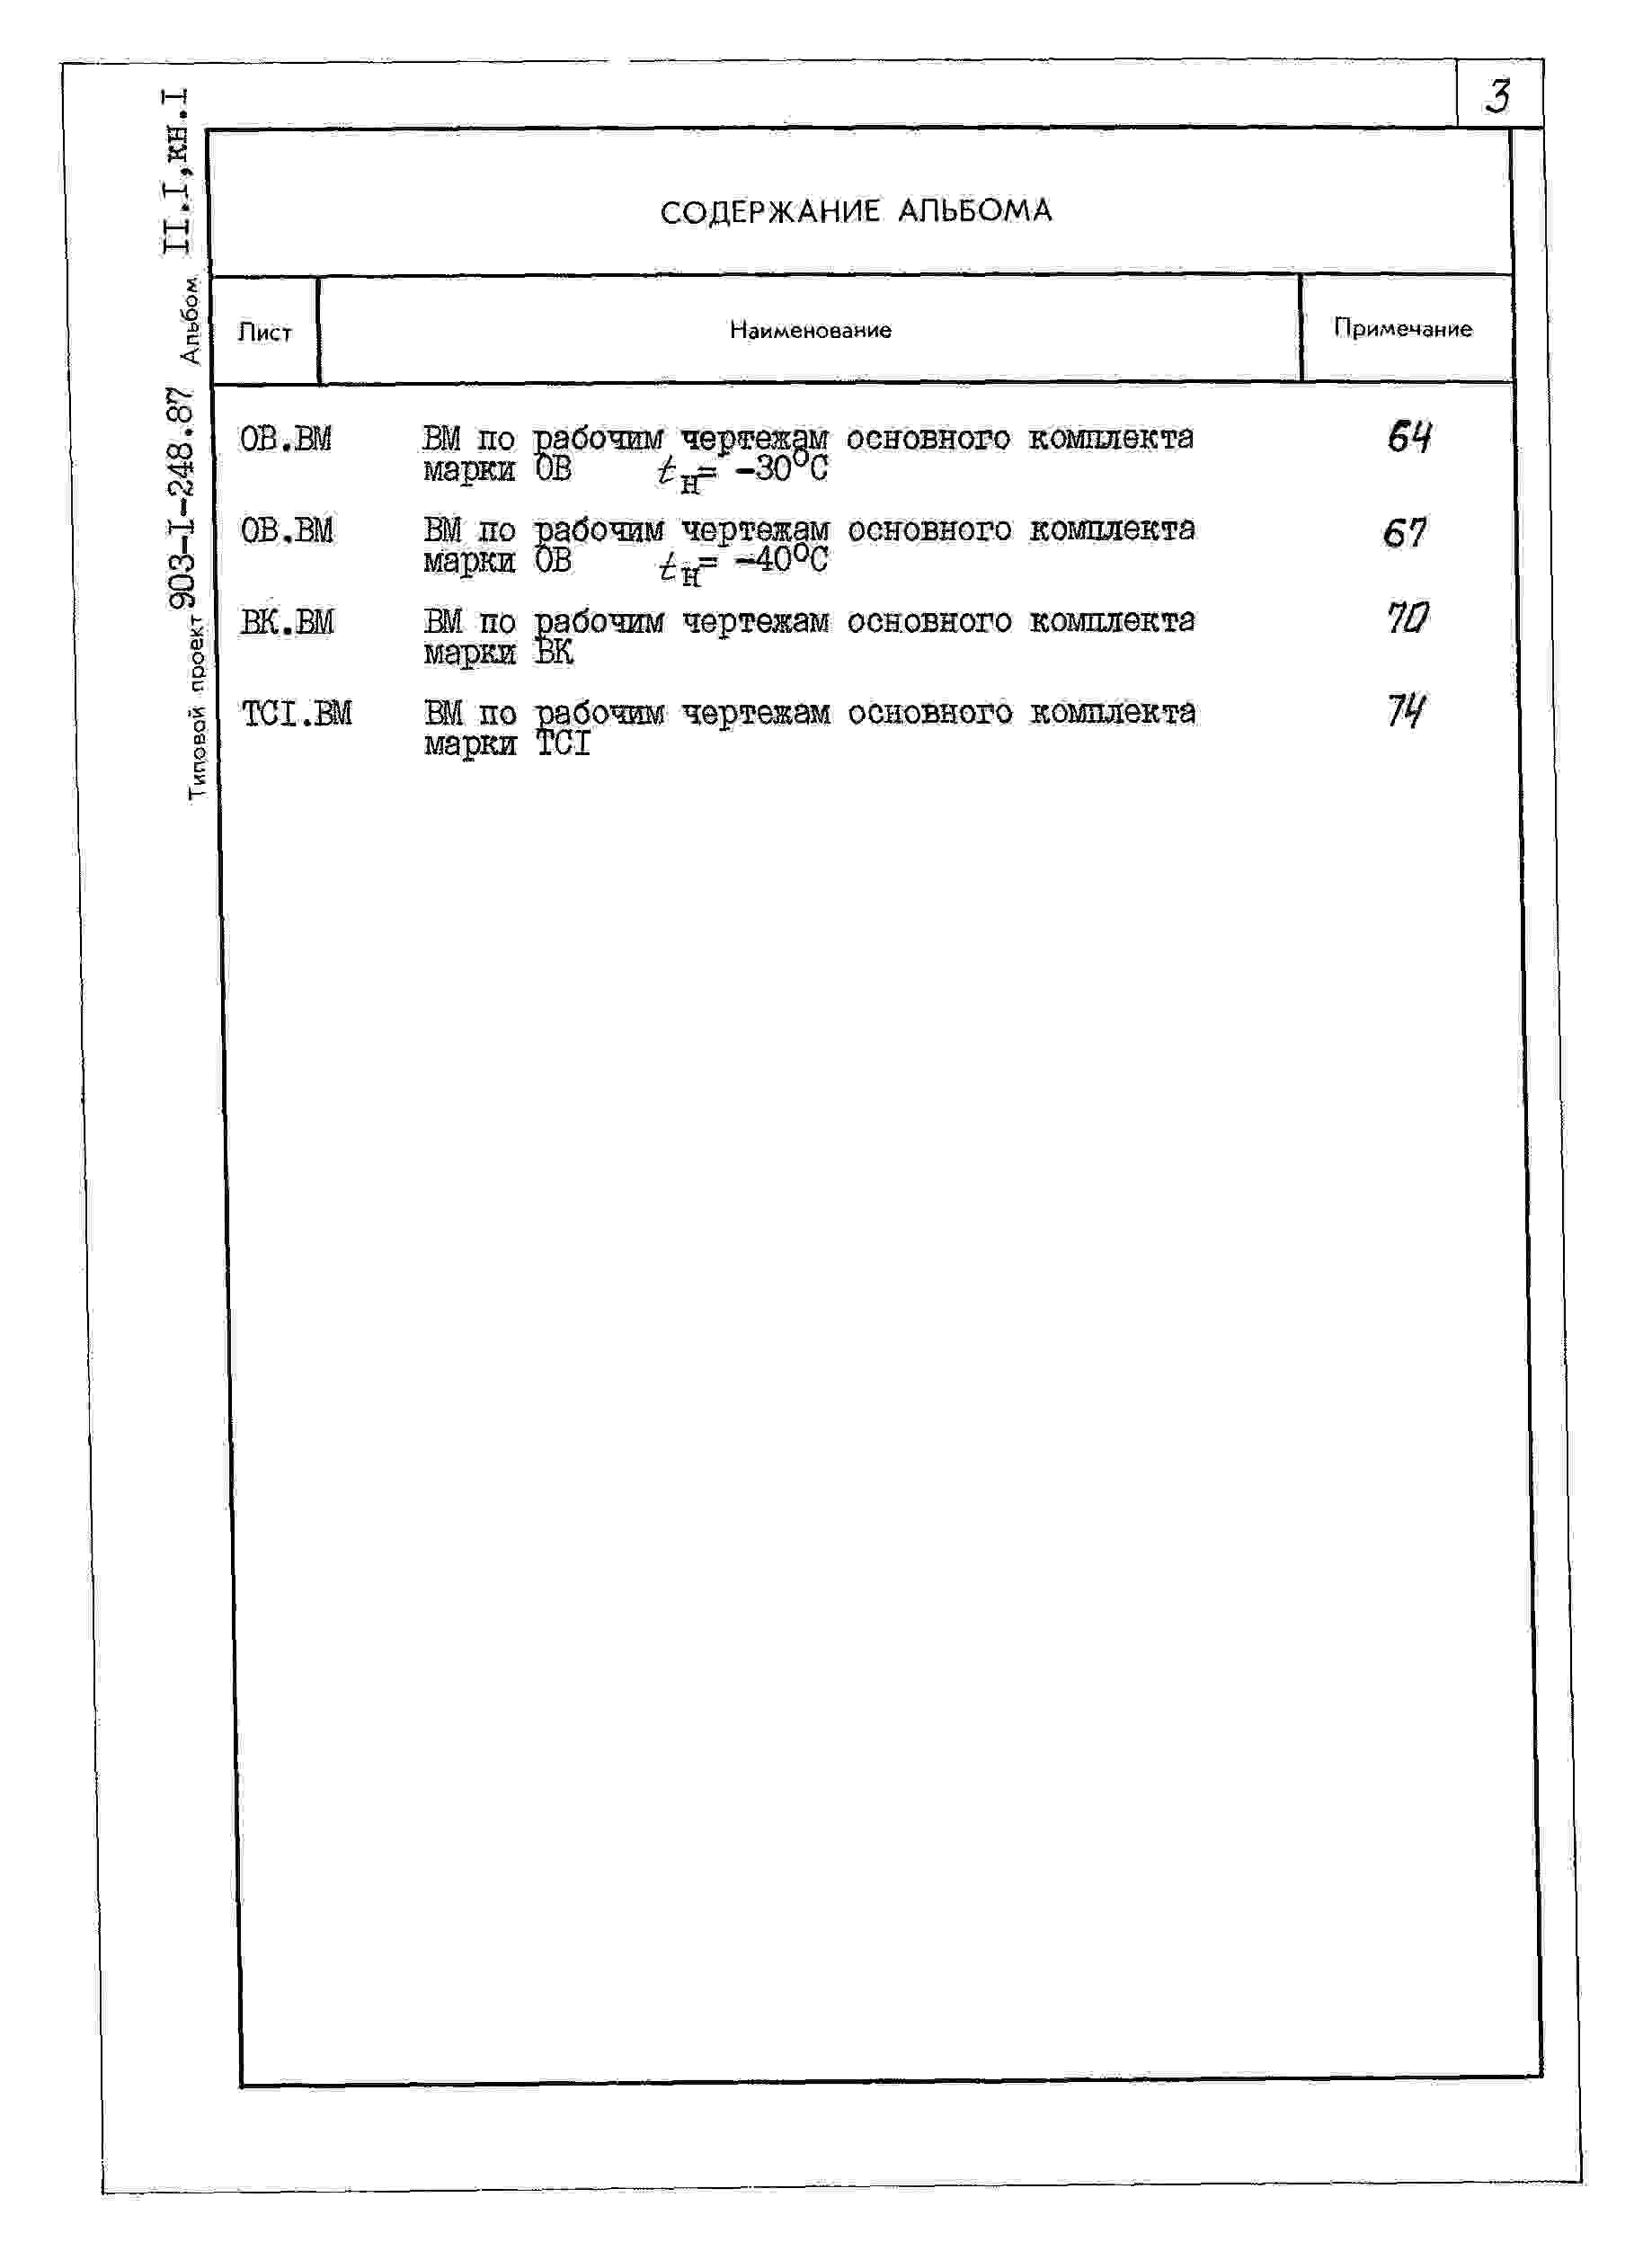 Альбом 2.1 Строительно-технологическая блок-секция котлоагрегата КВ-ГМ-11,63-150. Части: тепломеханическая, конструкции железобетонные, автоматизация (из ТП 903-1-229.86).